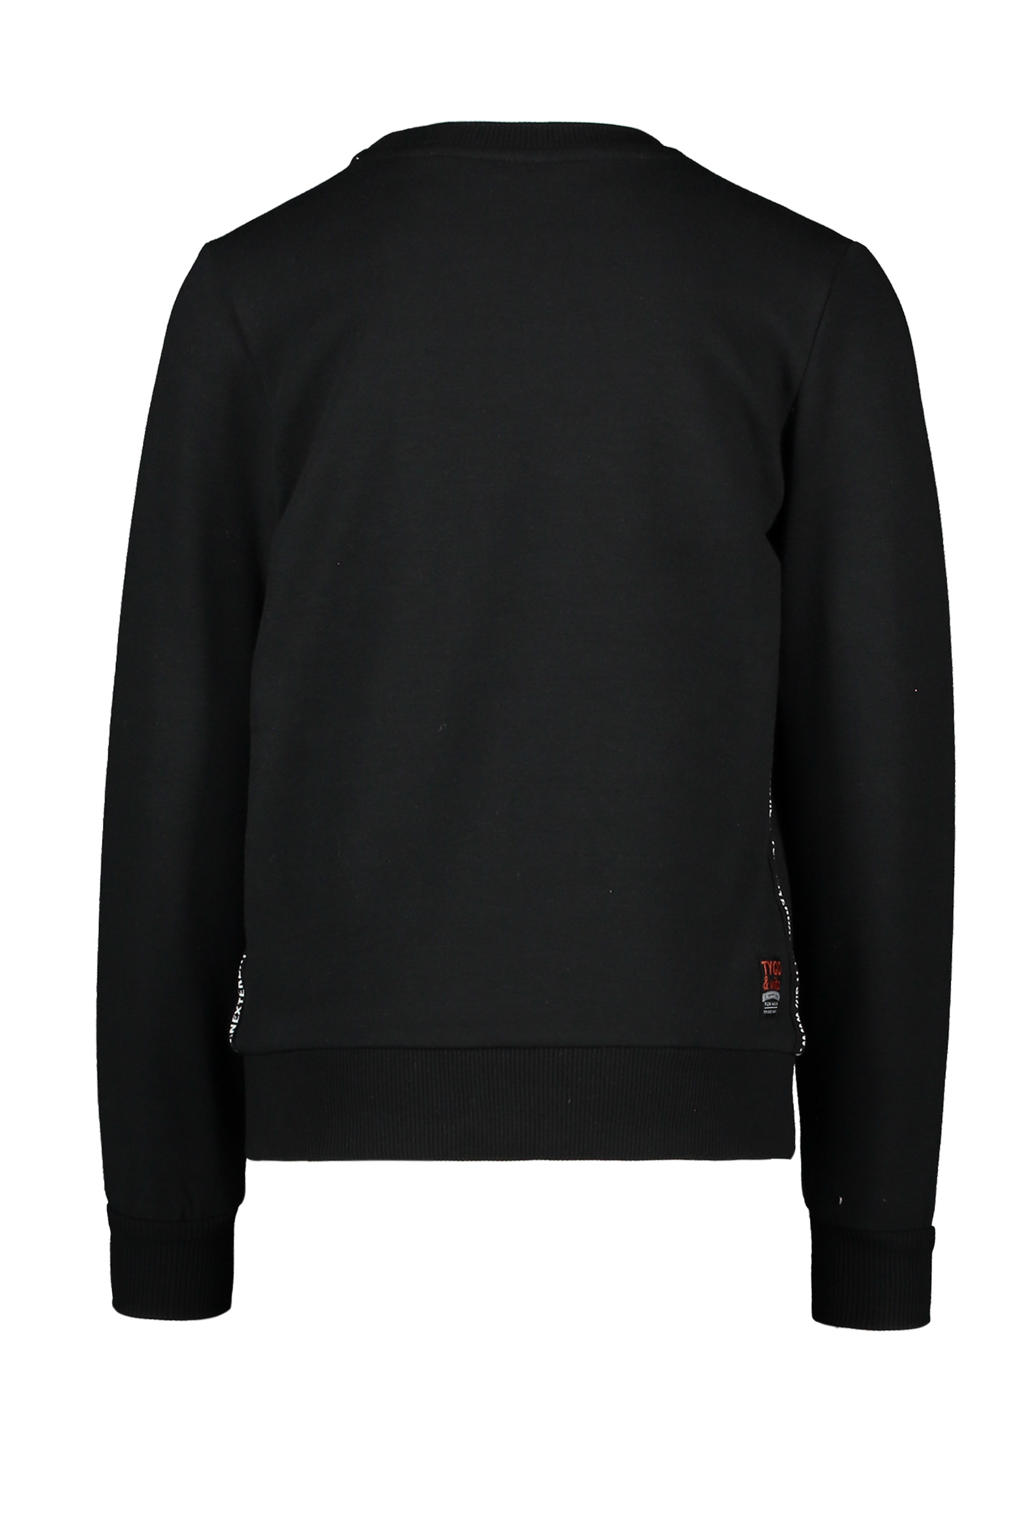 TYGO & vito sweater met printopdruk zwart